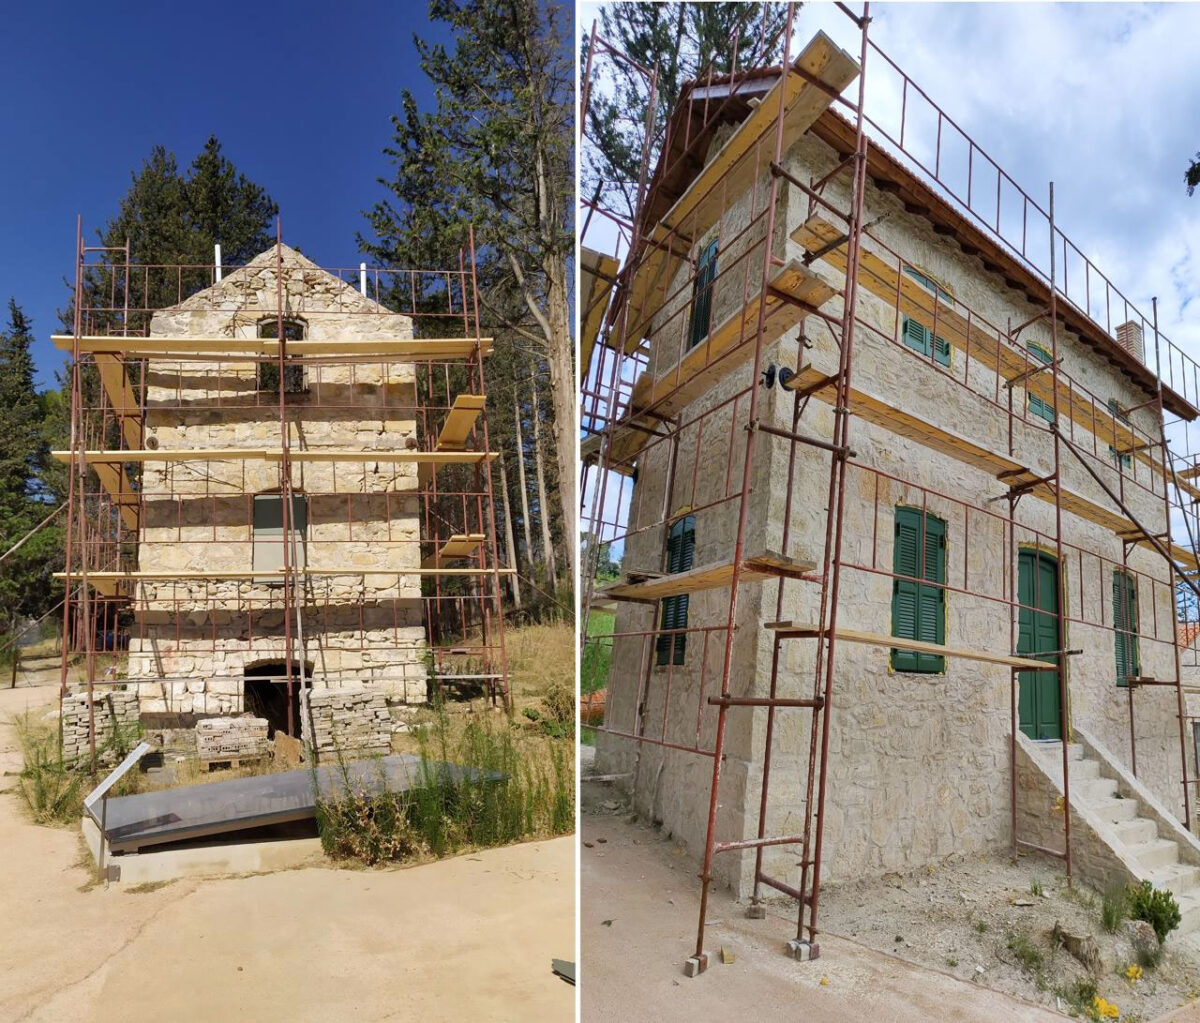 Οικία Αρχικηπουρού πριν και μετά τις εργασίες αποκατάστασης. Πηγή εικόνας: ΥΠΠΟ.